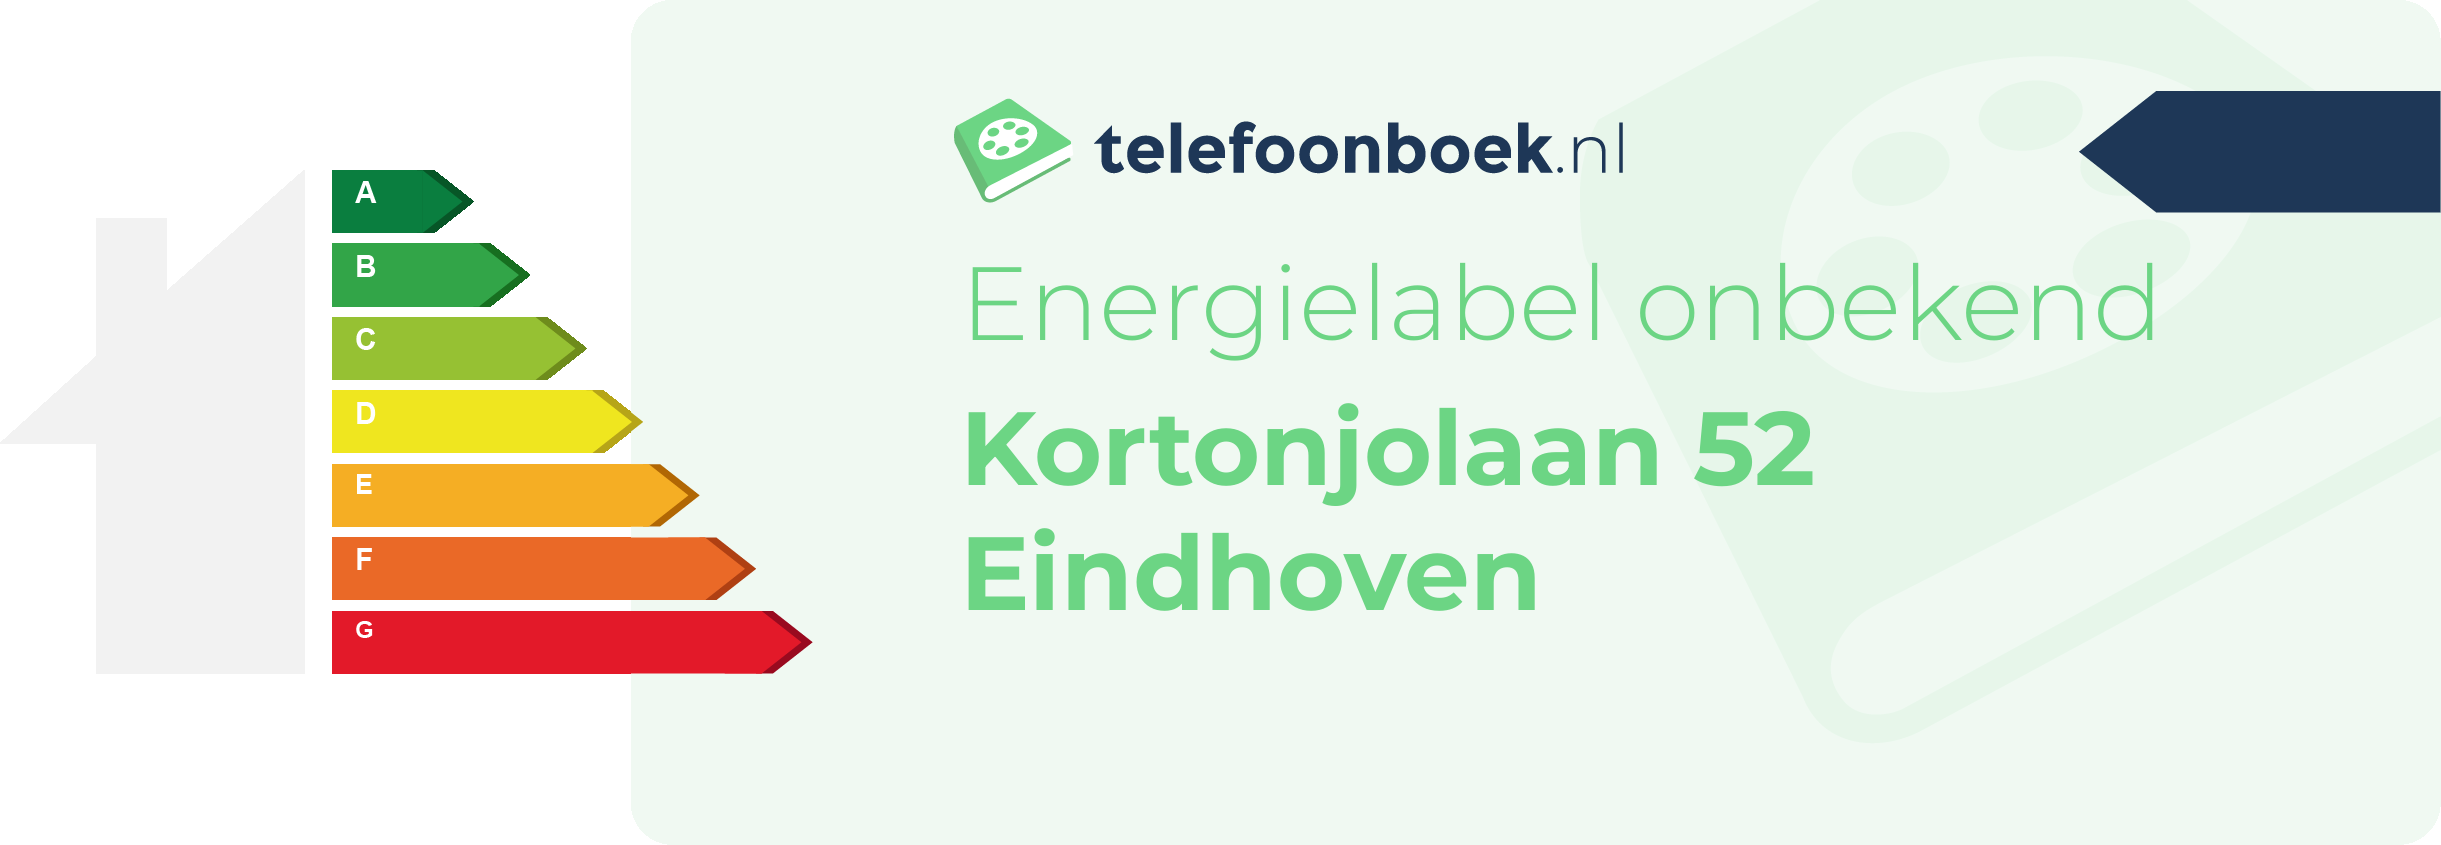 Energielabel Kortonjolaan 52 Eindhoven